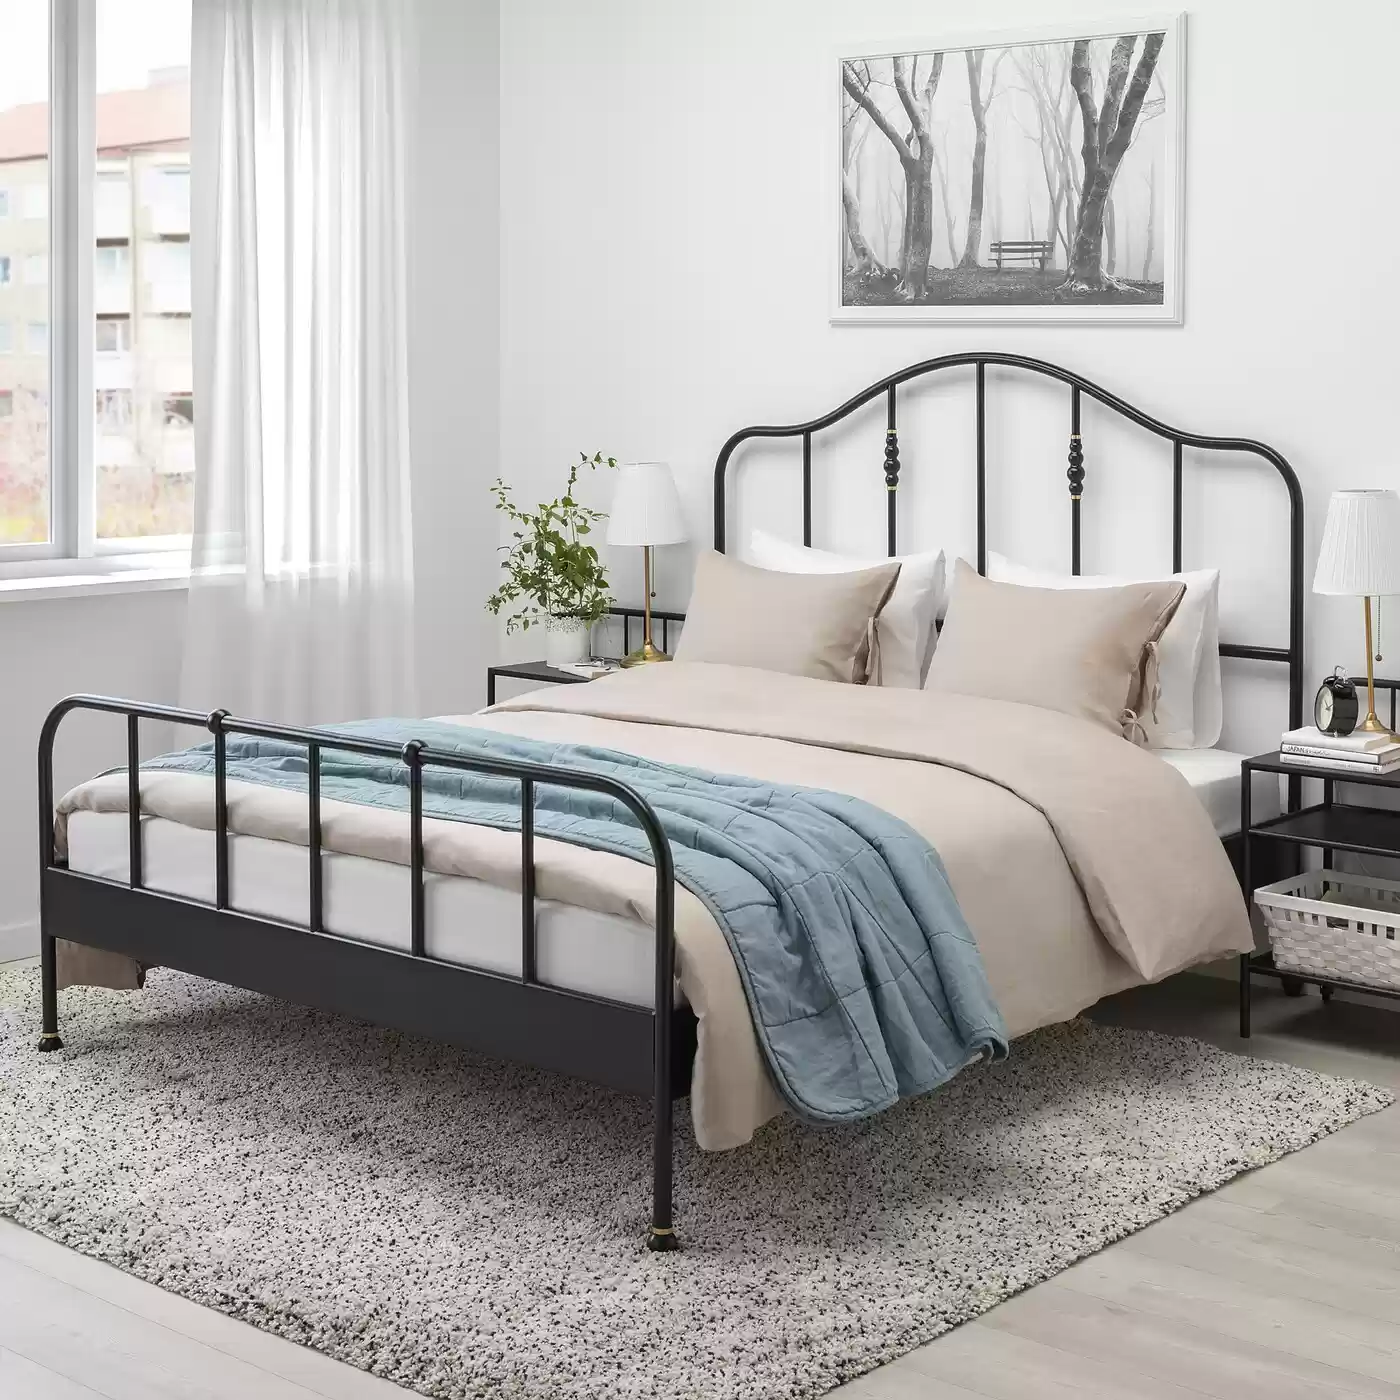 Двуспальная металлическая кровать САГСТУА ИКЕА (IKEA)